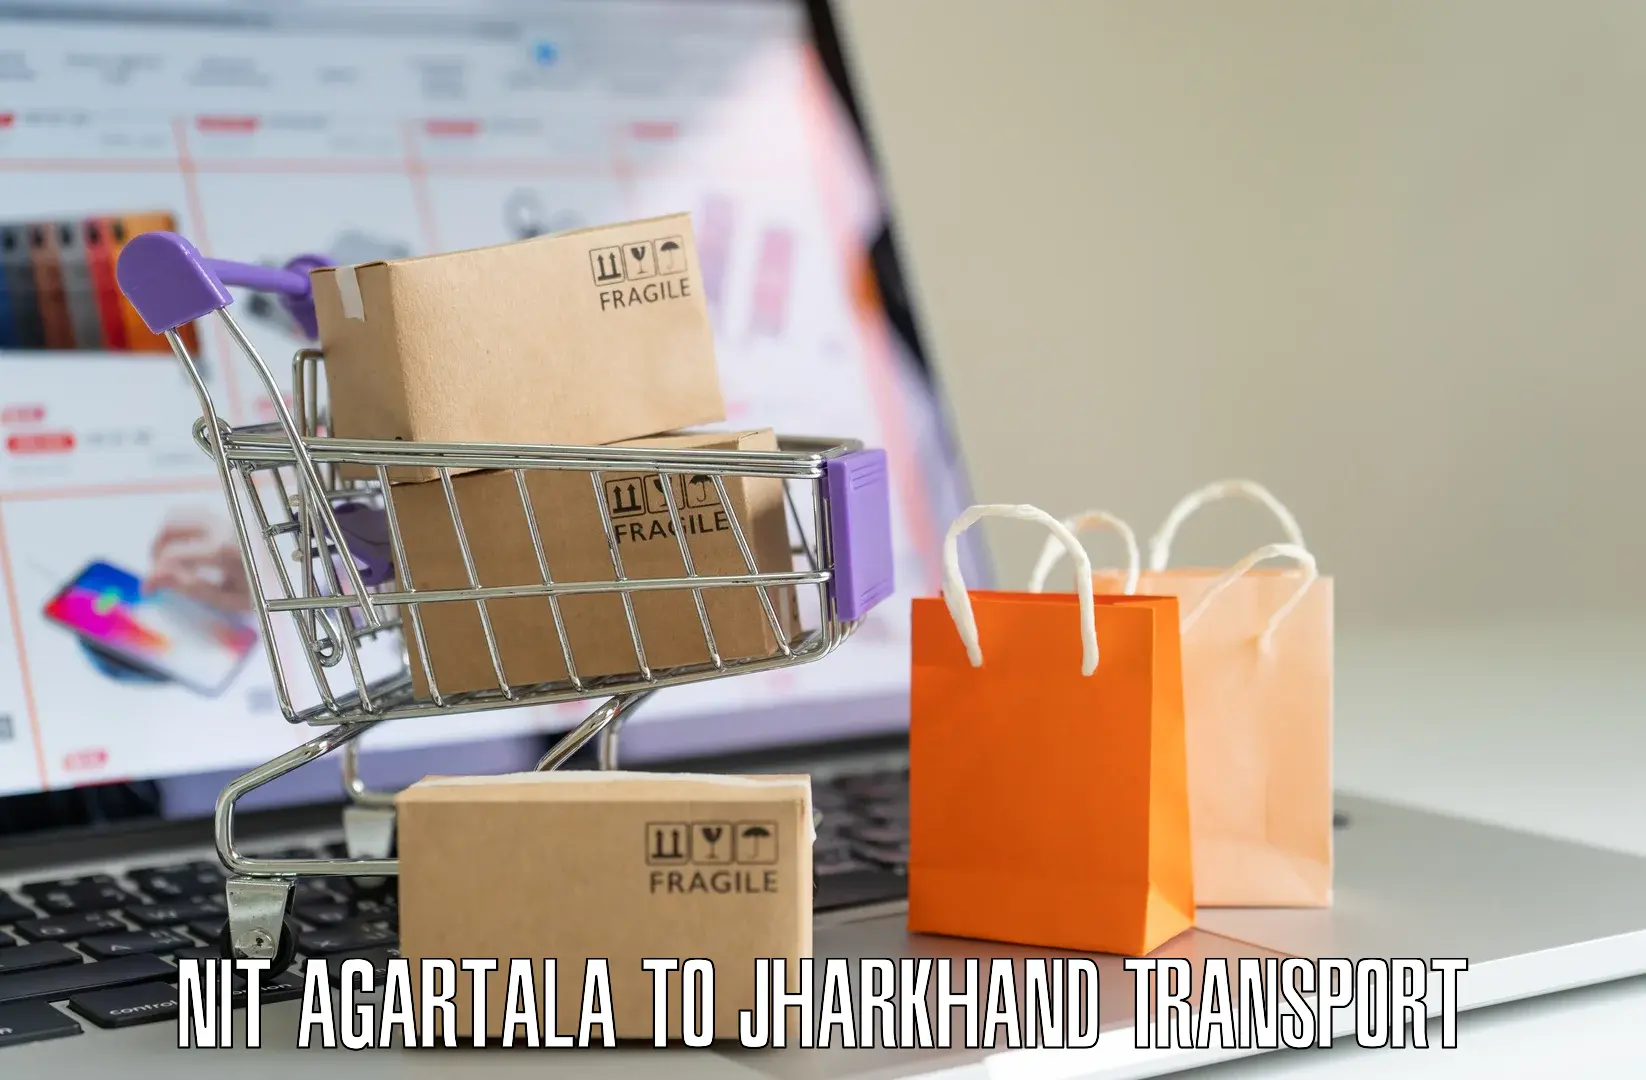 Two wheeler parcel service NIT Agartala to Rangalia